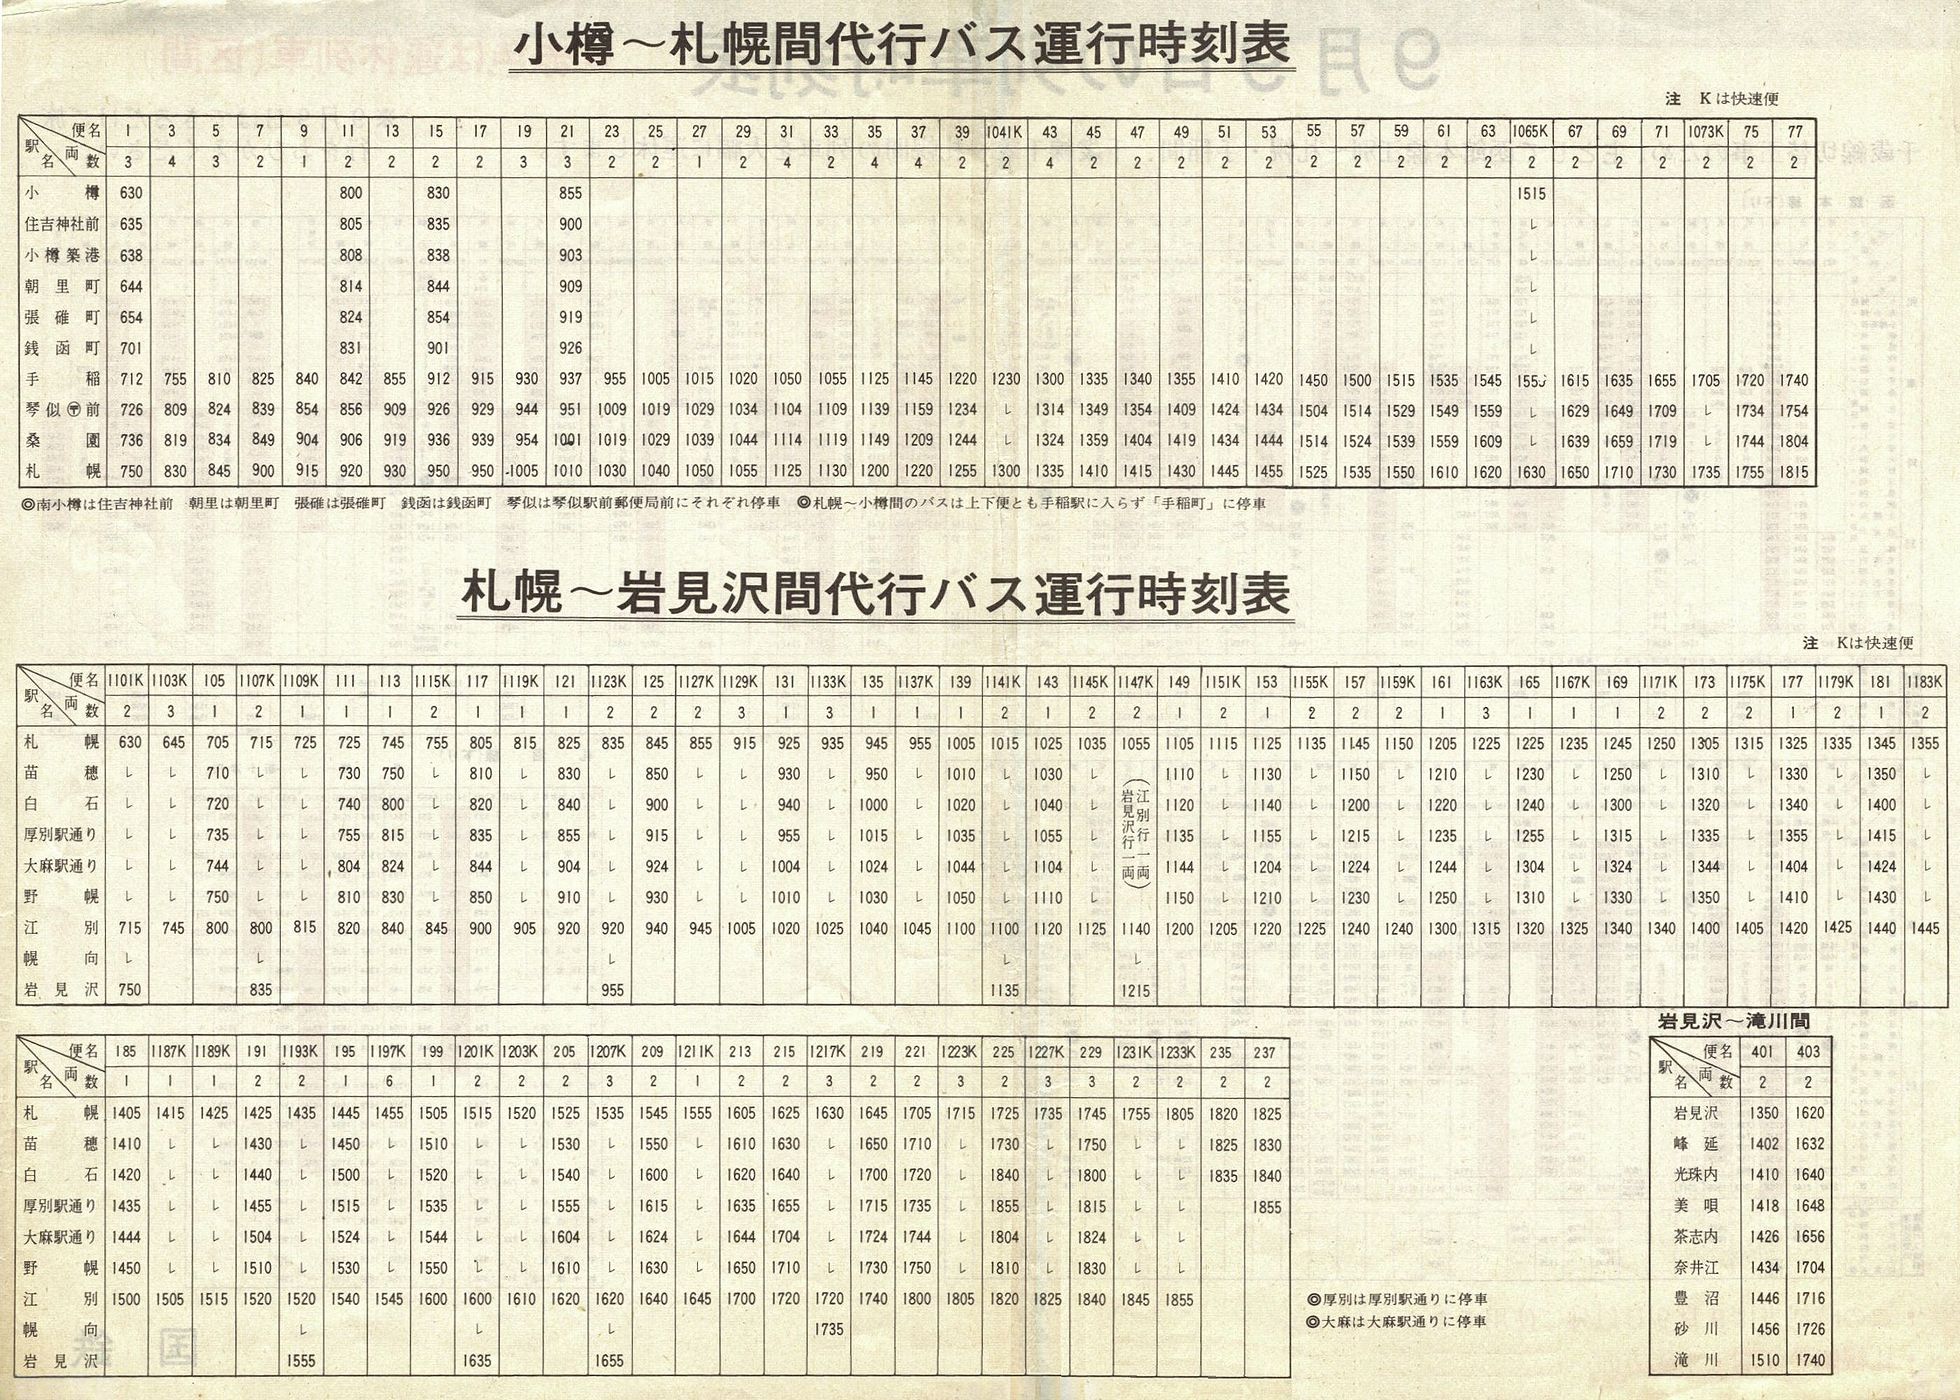 1973-09-09実施_国鉄千歳線切替_函館本線下り代行バス時刻表